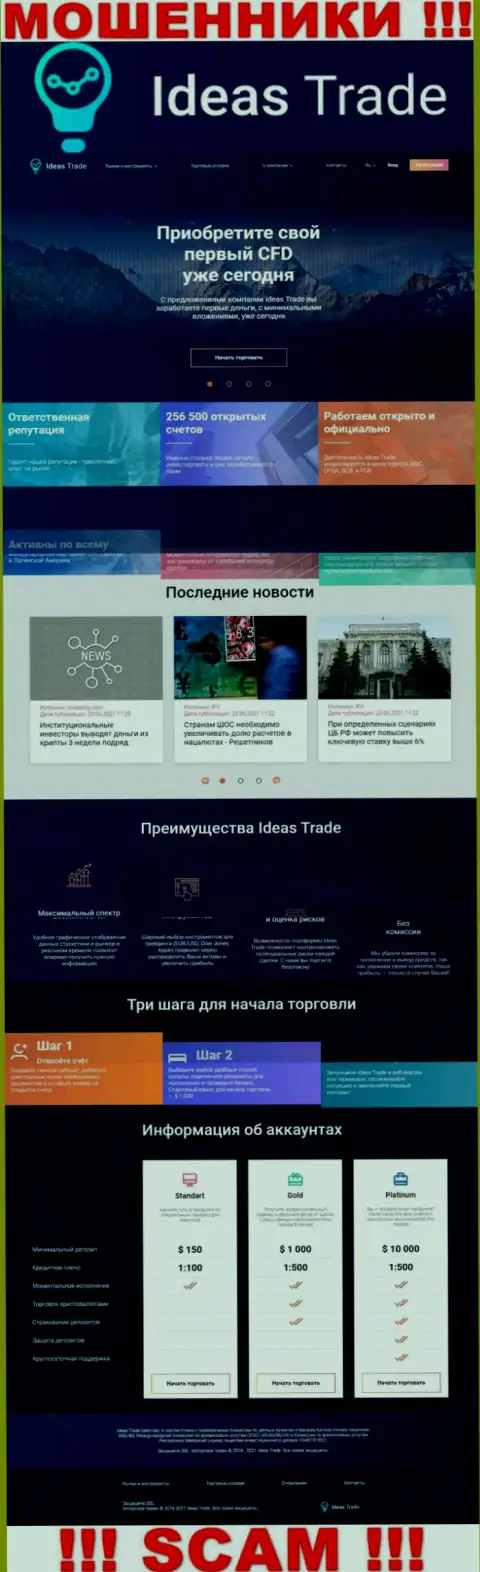 Официальный портал мошенников ИдеасТрейд Ком